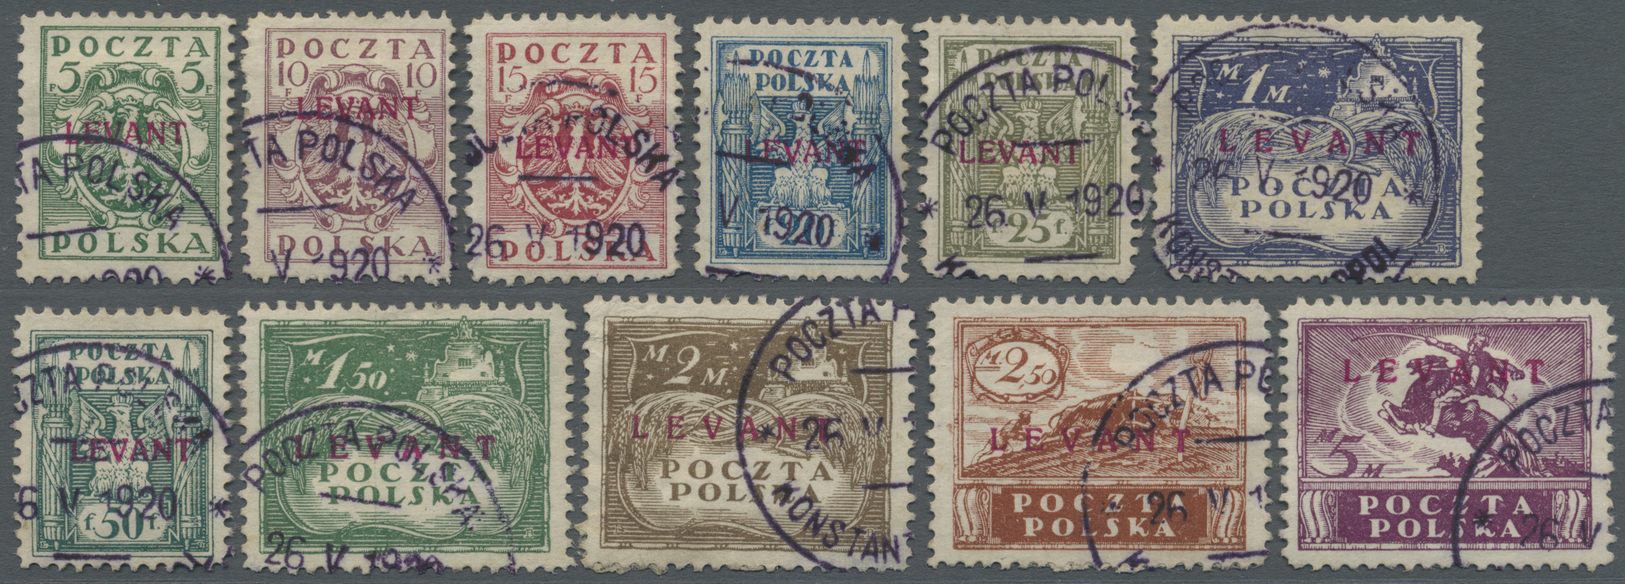 O Polen - Post In Der Levante: 1919, 5 F. - 5 M. Konsulatspost In Der Türkei, Marken Polens Mit Kirschrotem Aufd - Levant (Turquie)